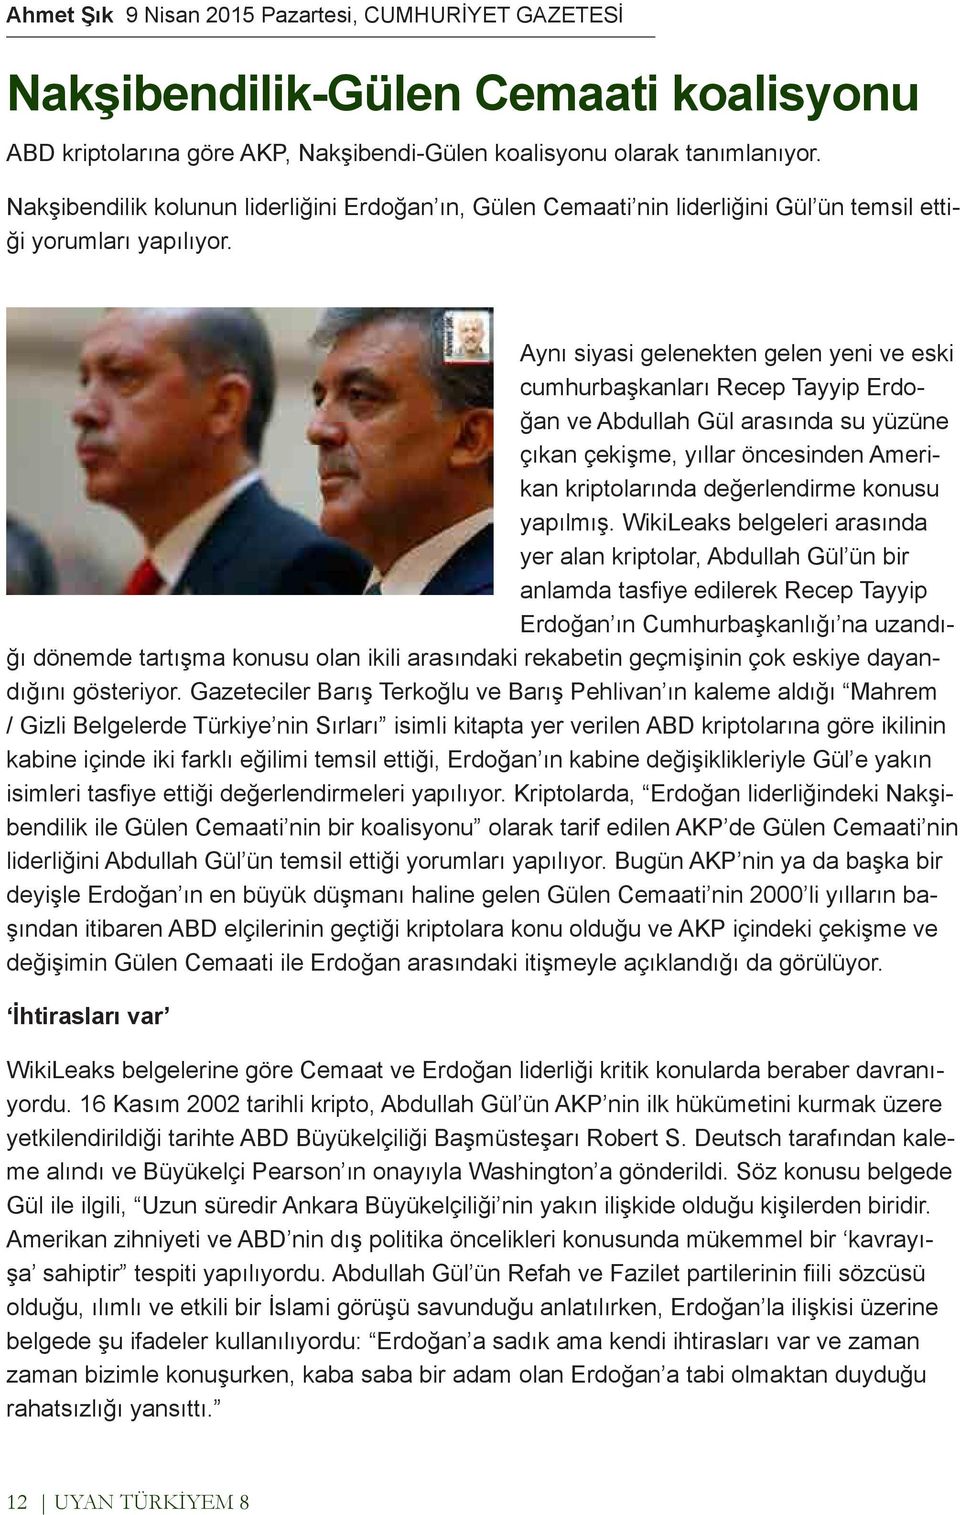 Aynı siyasi gelenekten gelen yeni ve eski cumhurbaşkanları Recep Tayyip Erdoğan ve Abdullah Gül arasında su yüzüne çıkan çekişme, yıllar öncesinden Amerikan kriptolarında değerlendirme konusu